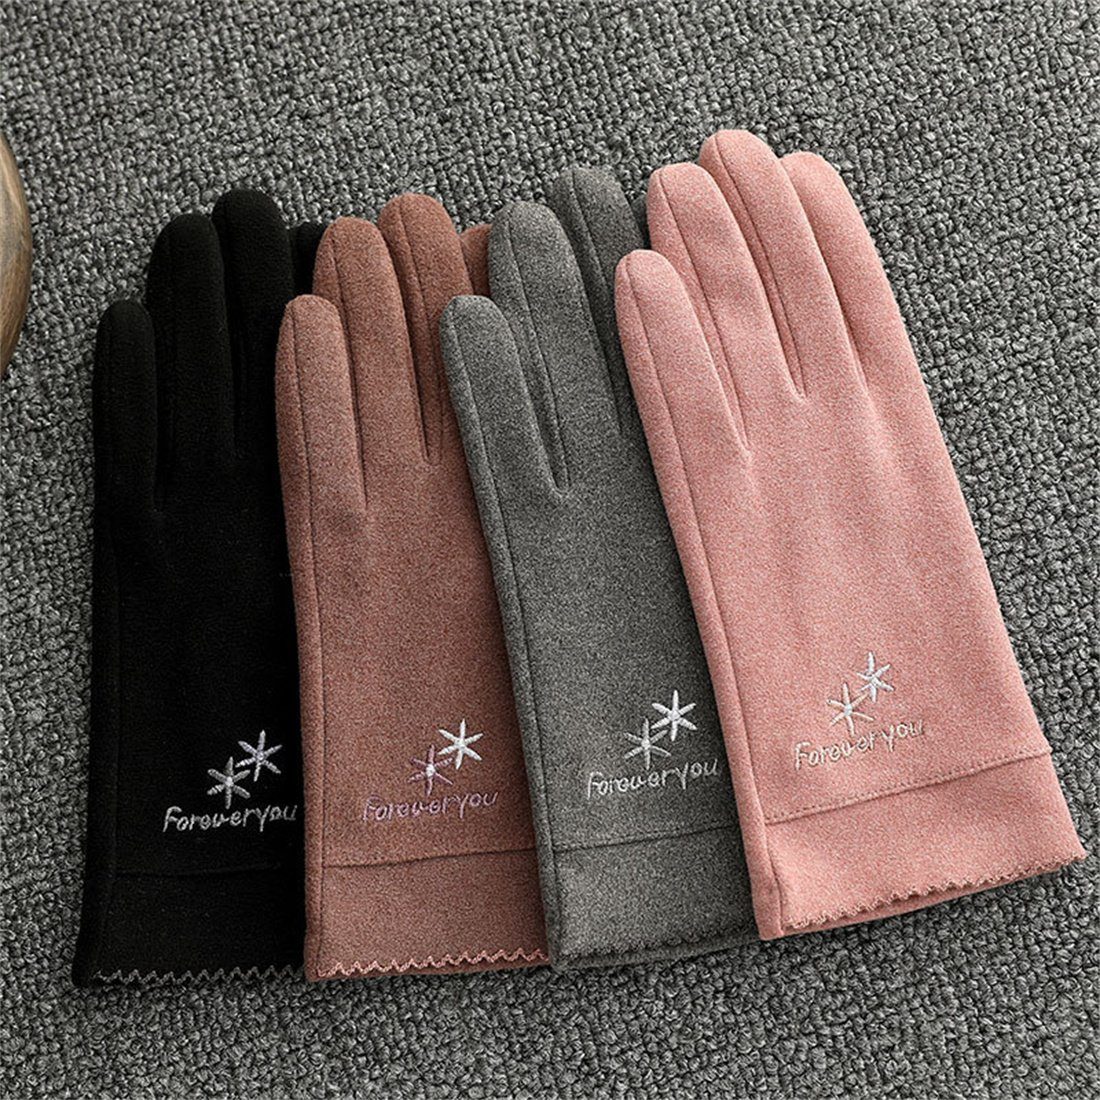 DÖRÖY Winter Reithandschuhe, Touchscreen Fleecehandschuhe Rosa Damenmode Handschuhe Warme